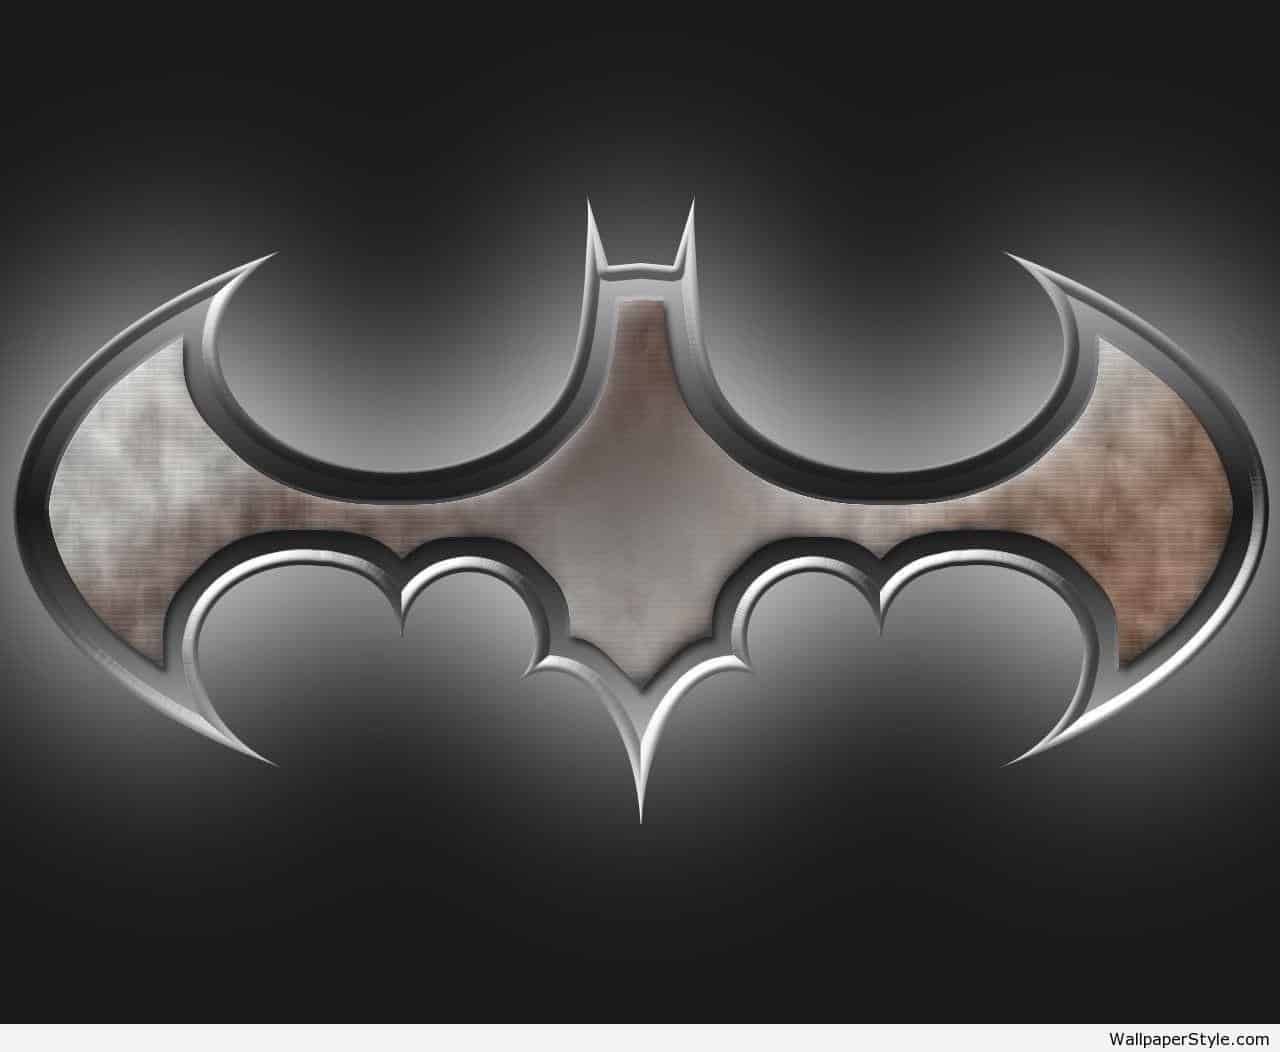 Batman 3D Image To Download Wallpaper. Batman wallpaper, Batman